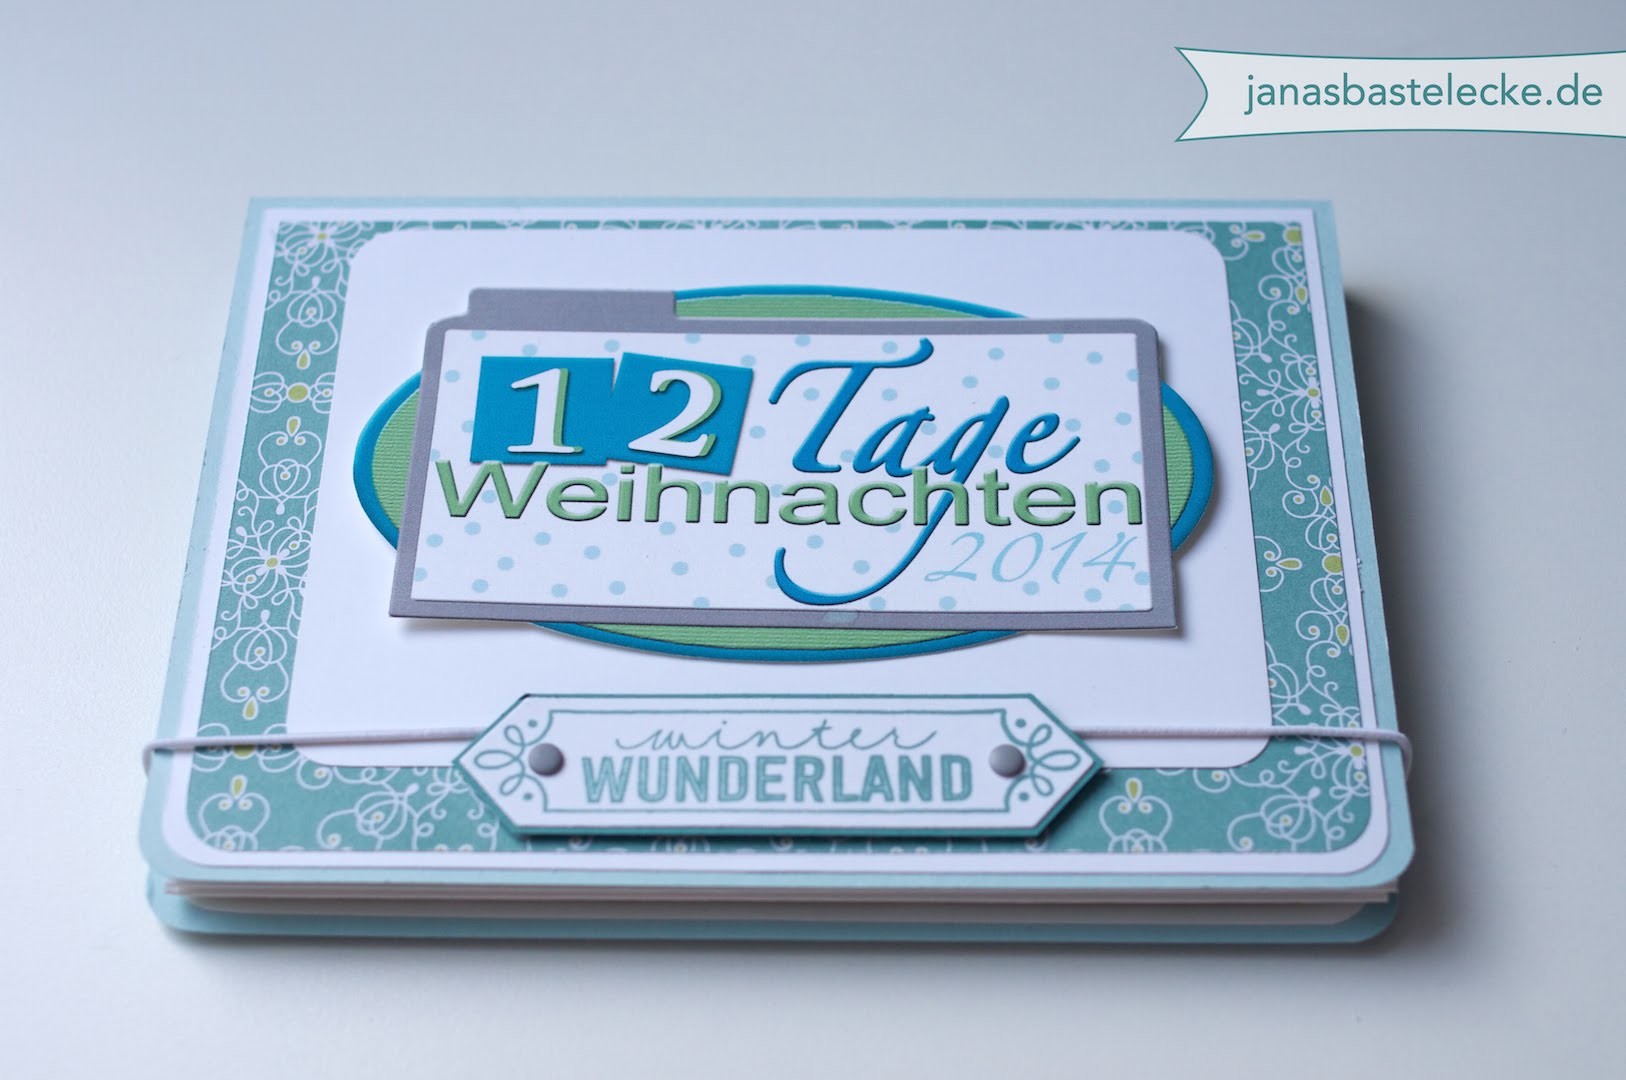 12 Tage Weihnachten 2014 - Minialbum Winter Wunderland